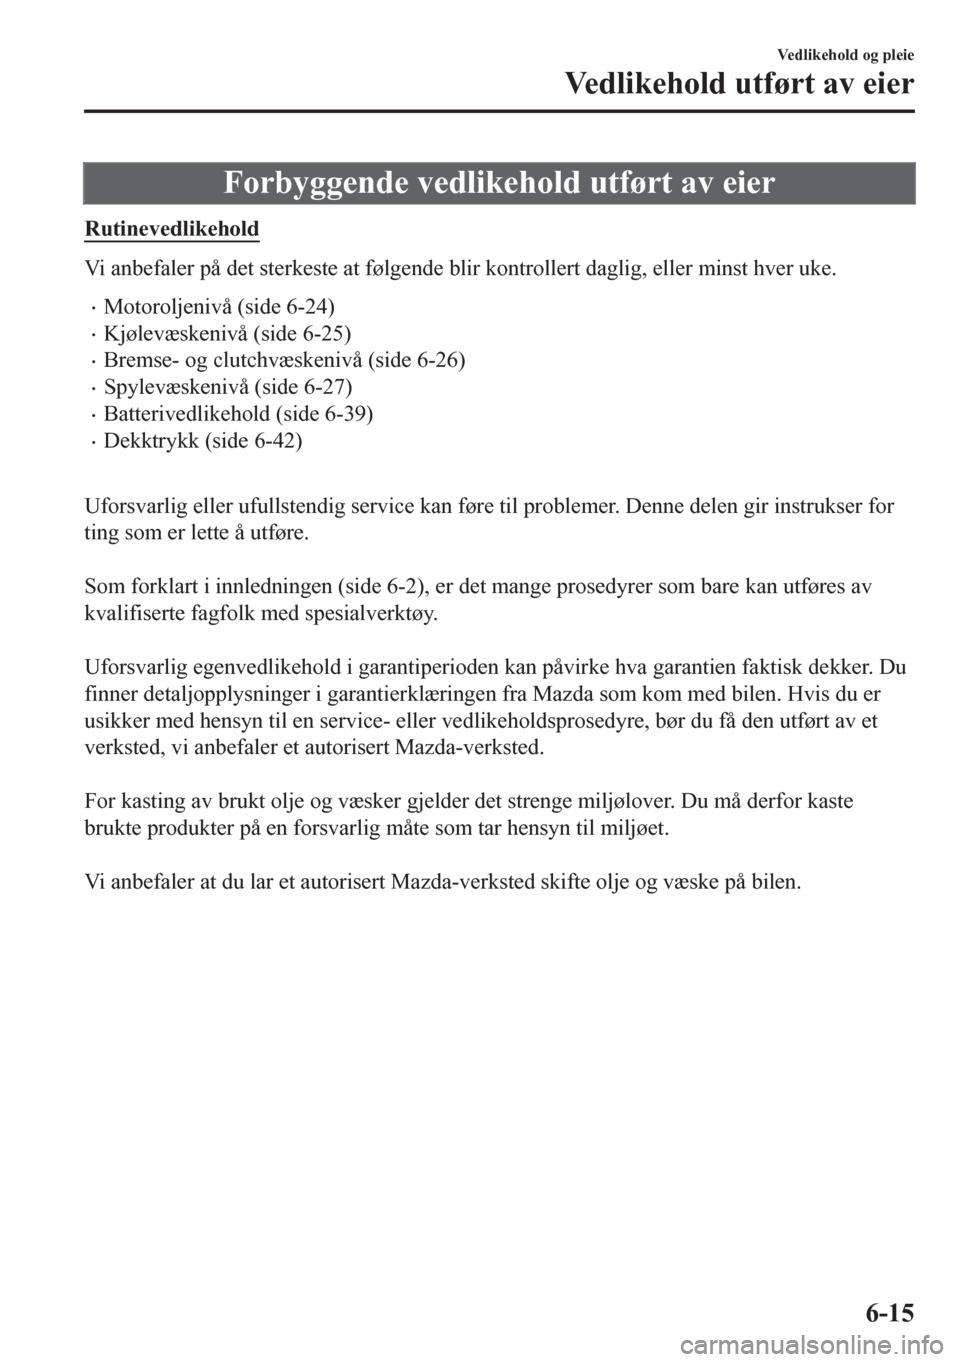 MAZDA MODEL CX-5 2018  Brukerhåndbok (in Norwegian) Forbyggende vedlikehold utført av eier
Rutinevedlikehold
Vi anbefaler på det sterkeste at følgende blir kontrollert daglig, eller minst hver uke.
•Motoroljenivå (side 6-24)
•Kjølevæskenivå 